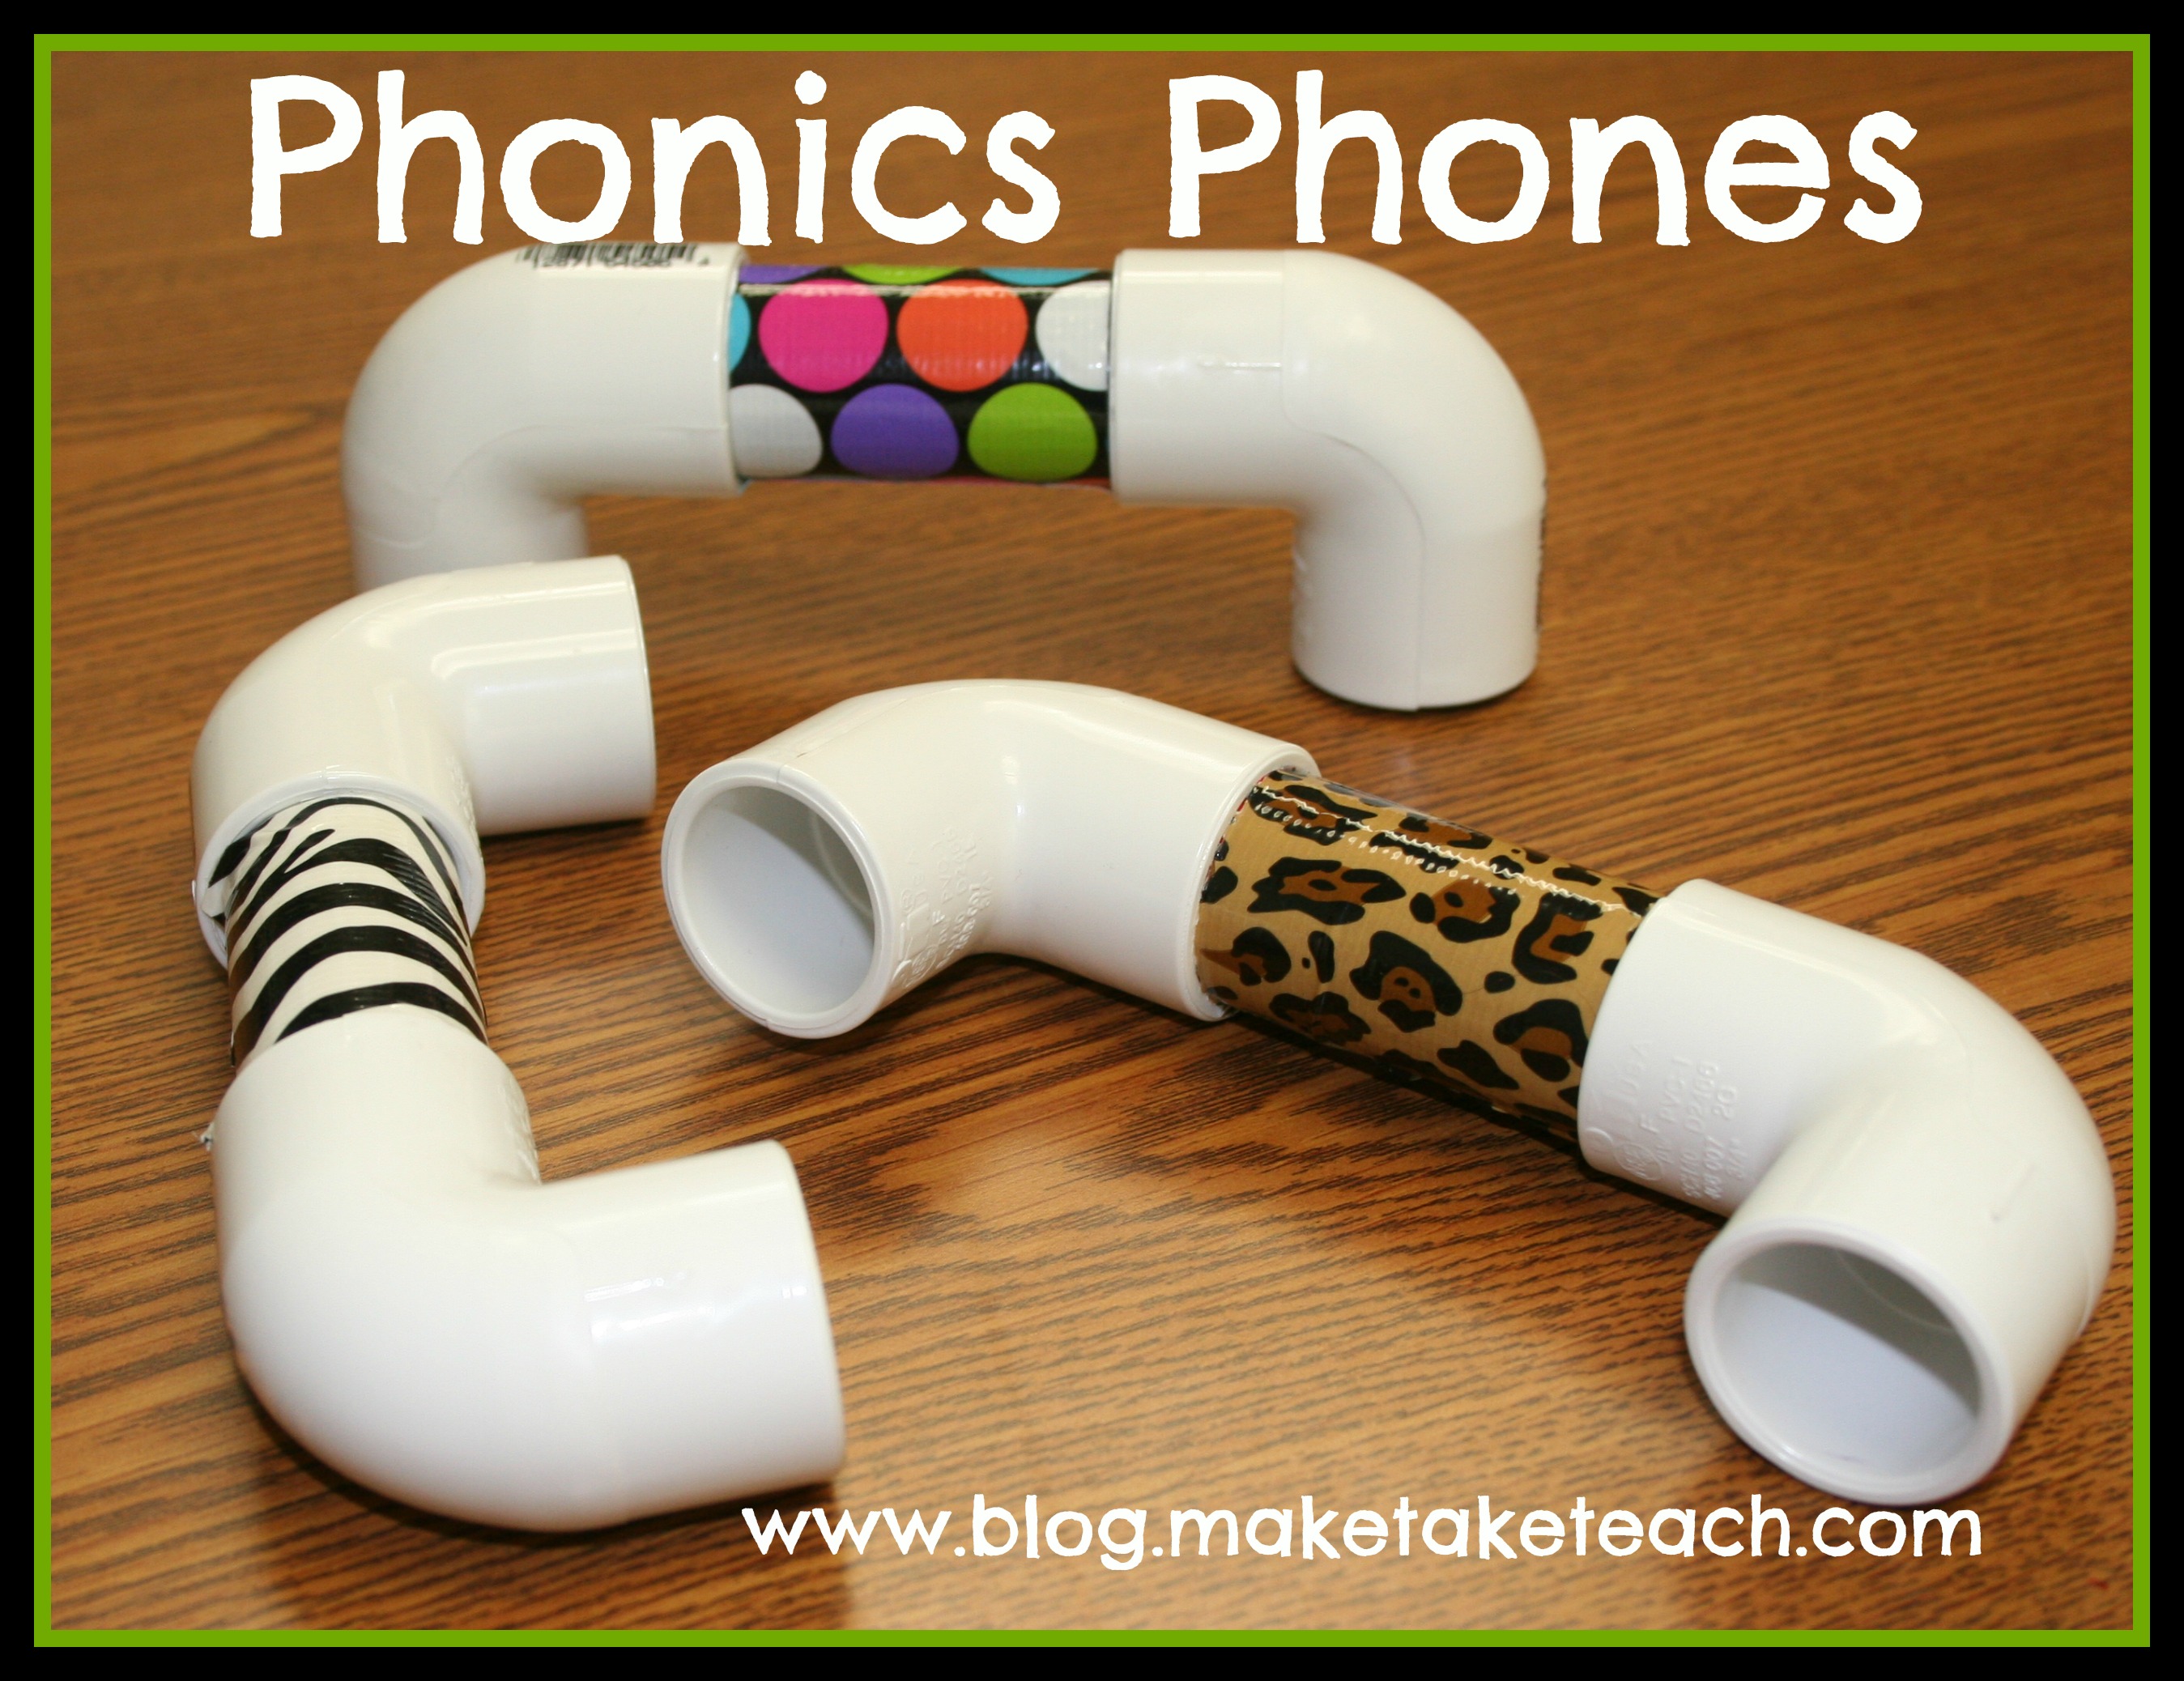 how-to-make-a-phonics-phone-make-take-teach